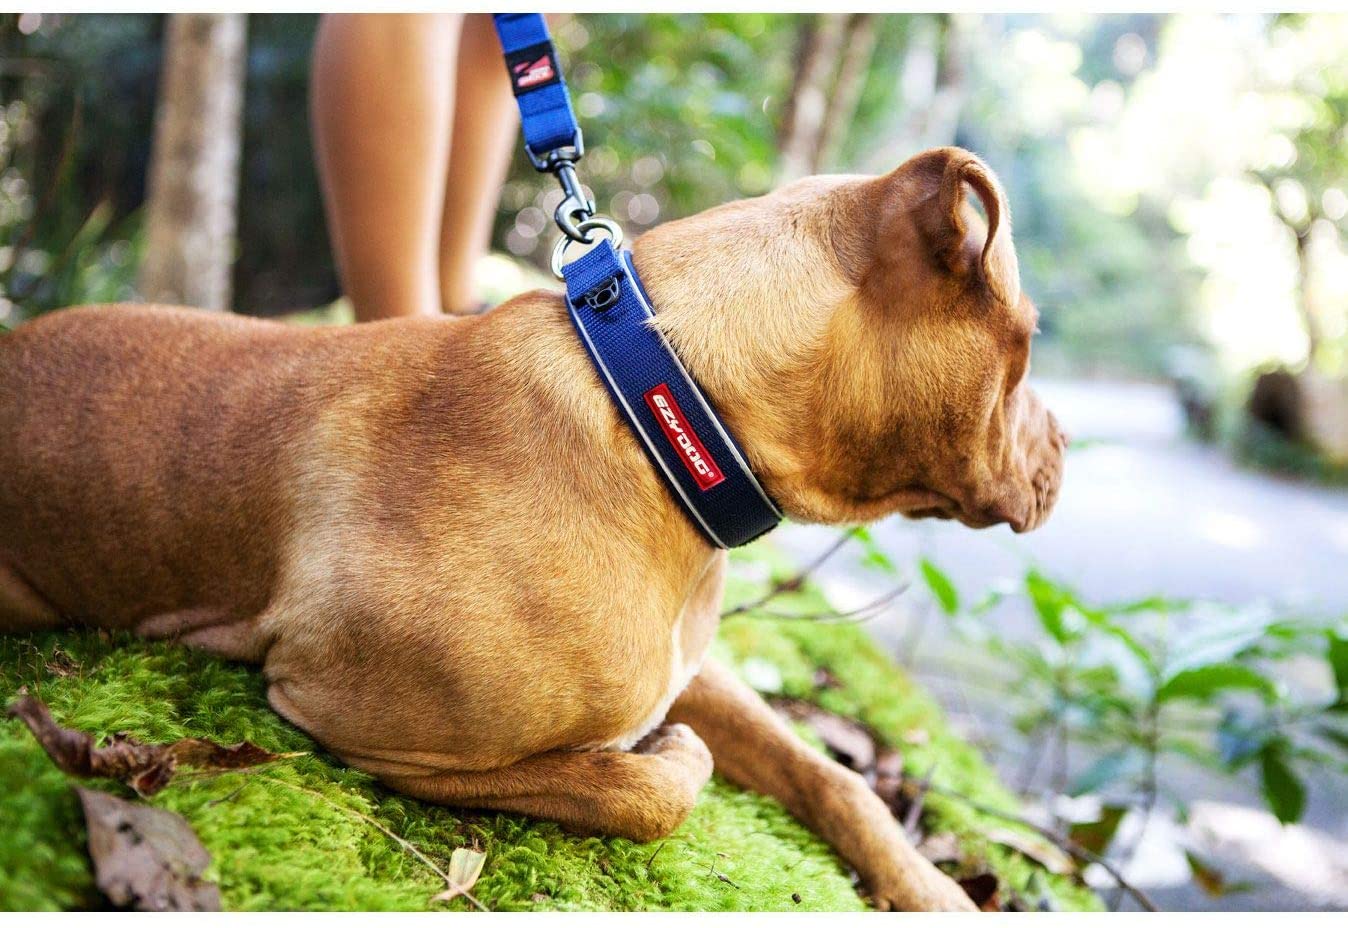  EzyDog Neo Classic - Collar para perro de neopreno, acolchado, para perros grandes, medianos, medianos y pequeños, reflectores para una perfecta visibilidad 